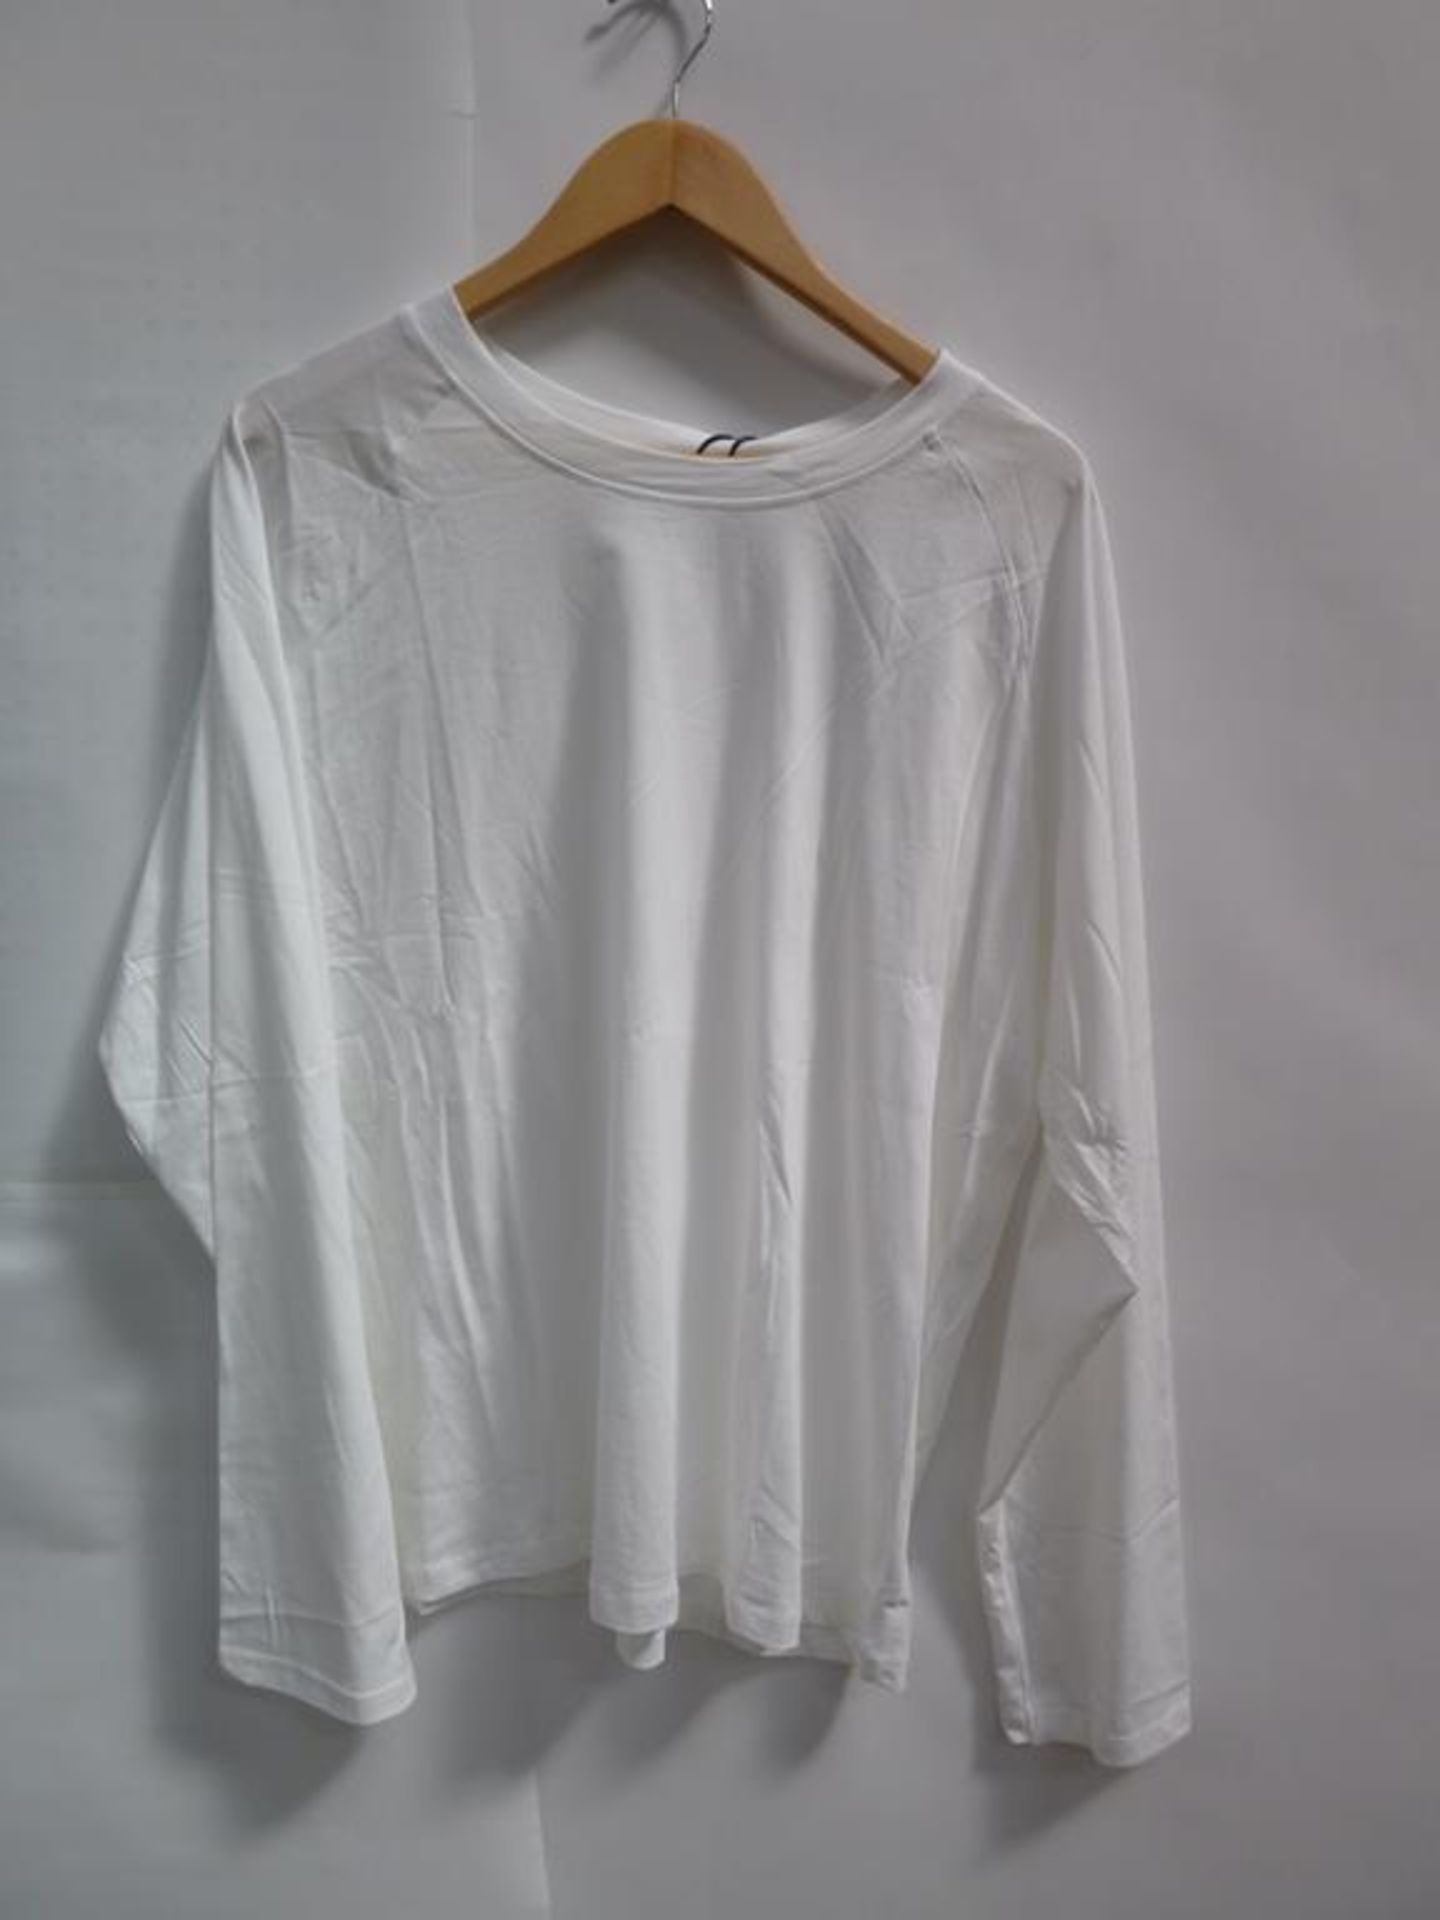 5 x Long Sleeve White T-Shirts (?), 3 x Black Long Sleeve Black T-Shirts (M), 2 x Long Sleeved Rice - Image 7 of 10